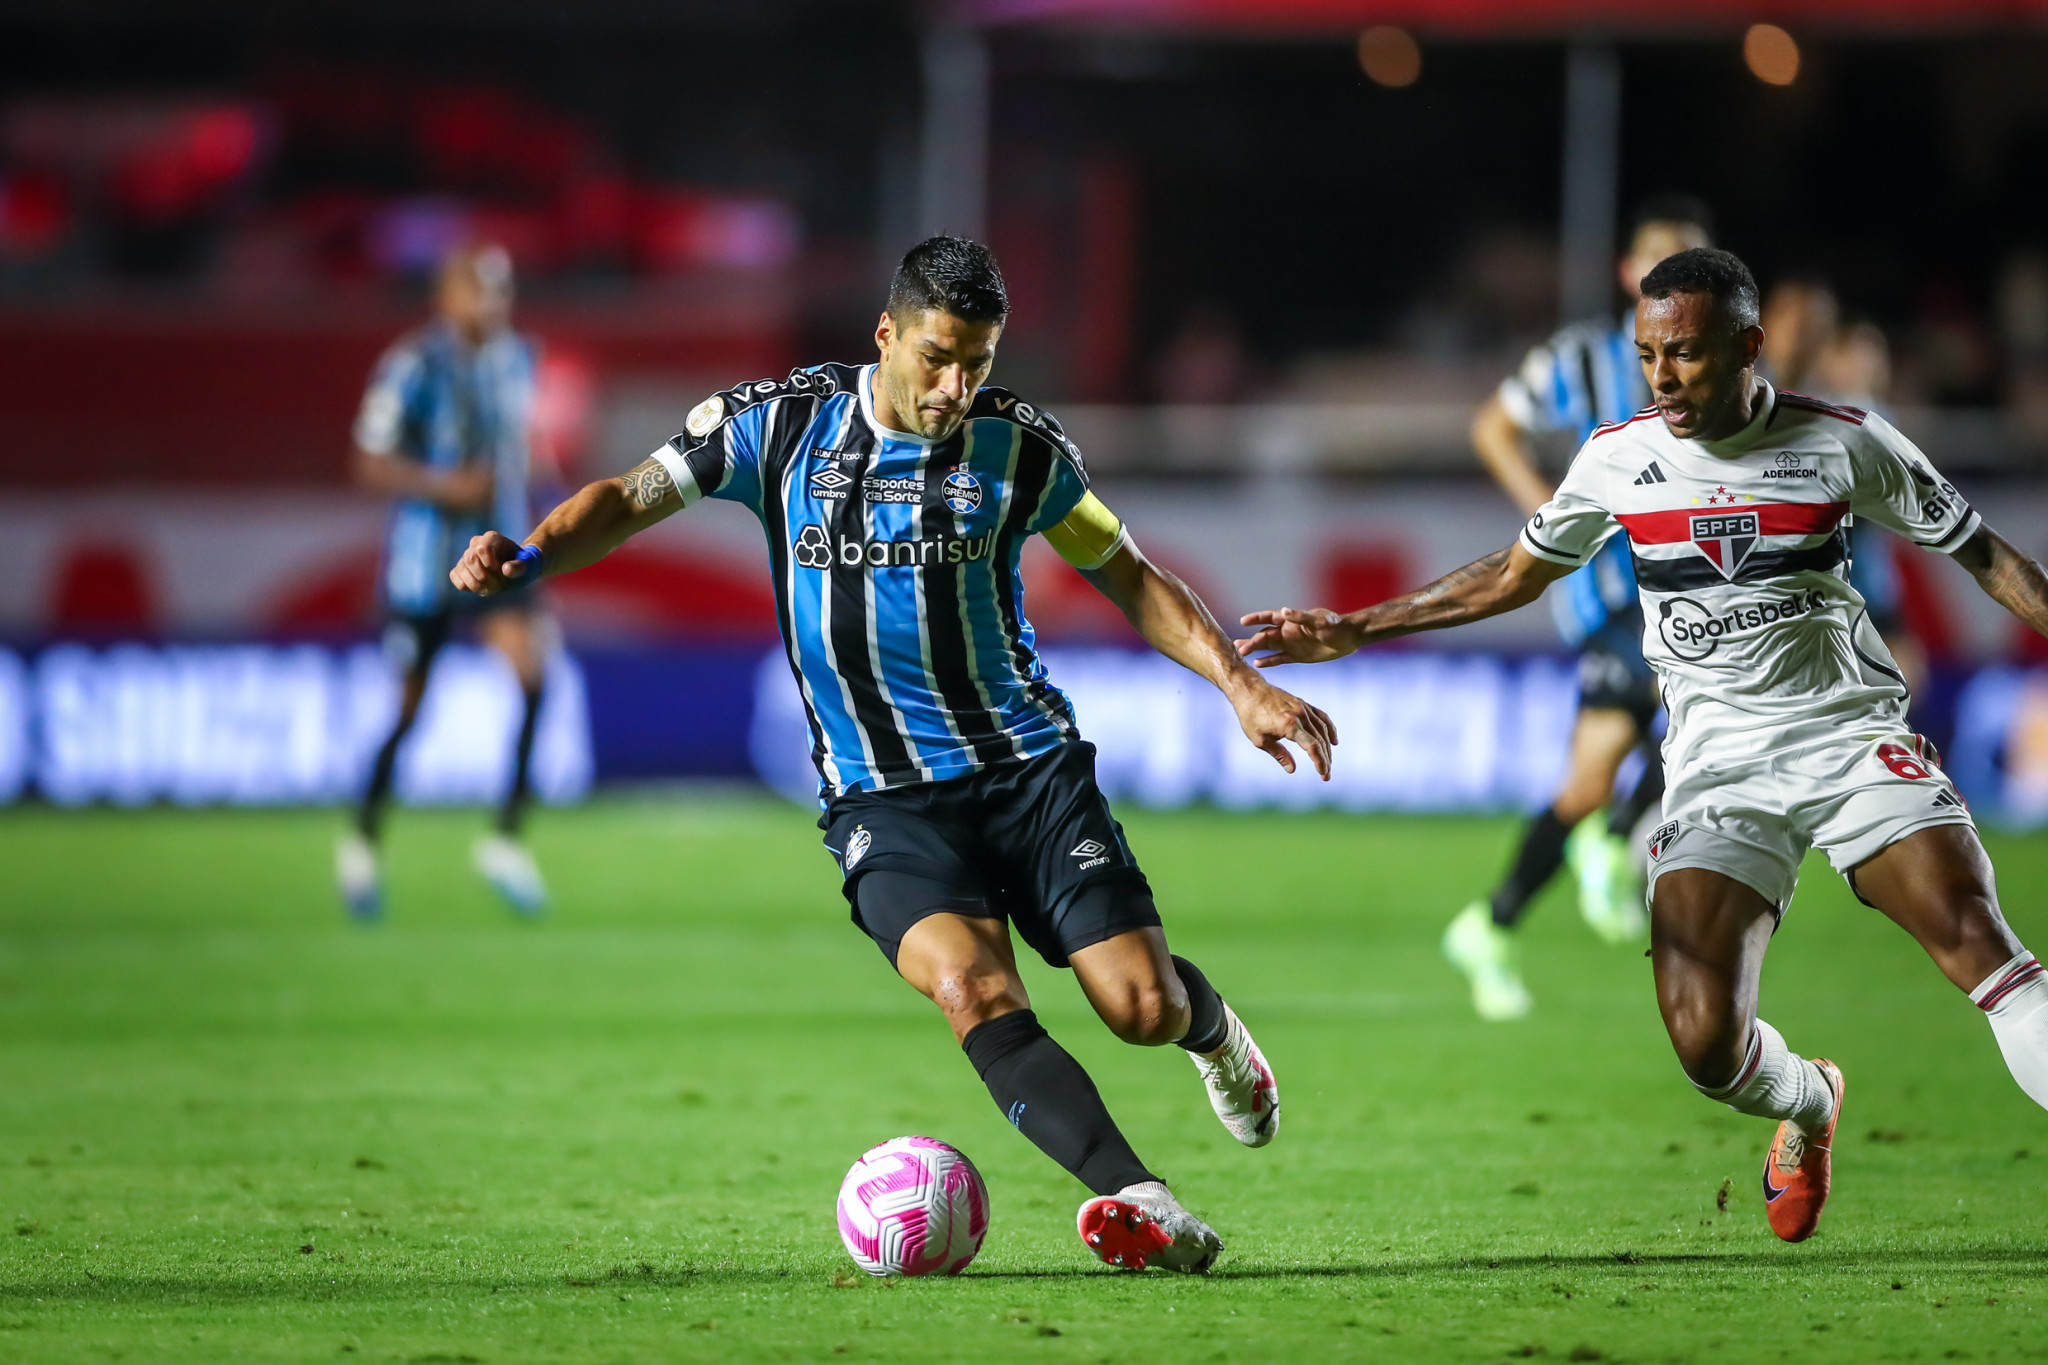 São Paulo x Grêmio: saiba onde assistir à partida pelo Campeonato  Brasileiro - Gazeta Esportiva - Muito além dos 90 minutos